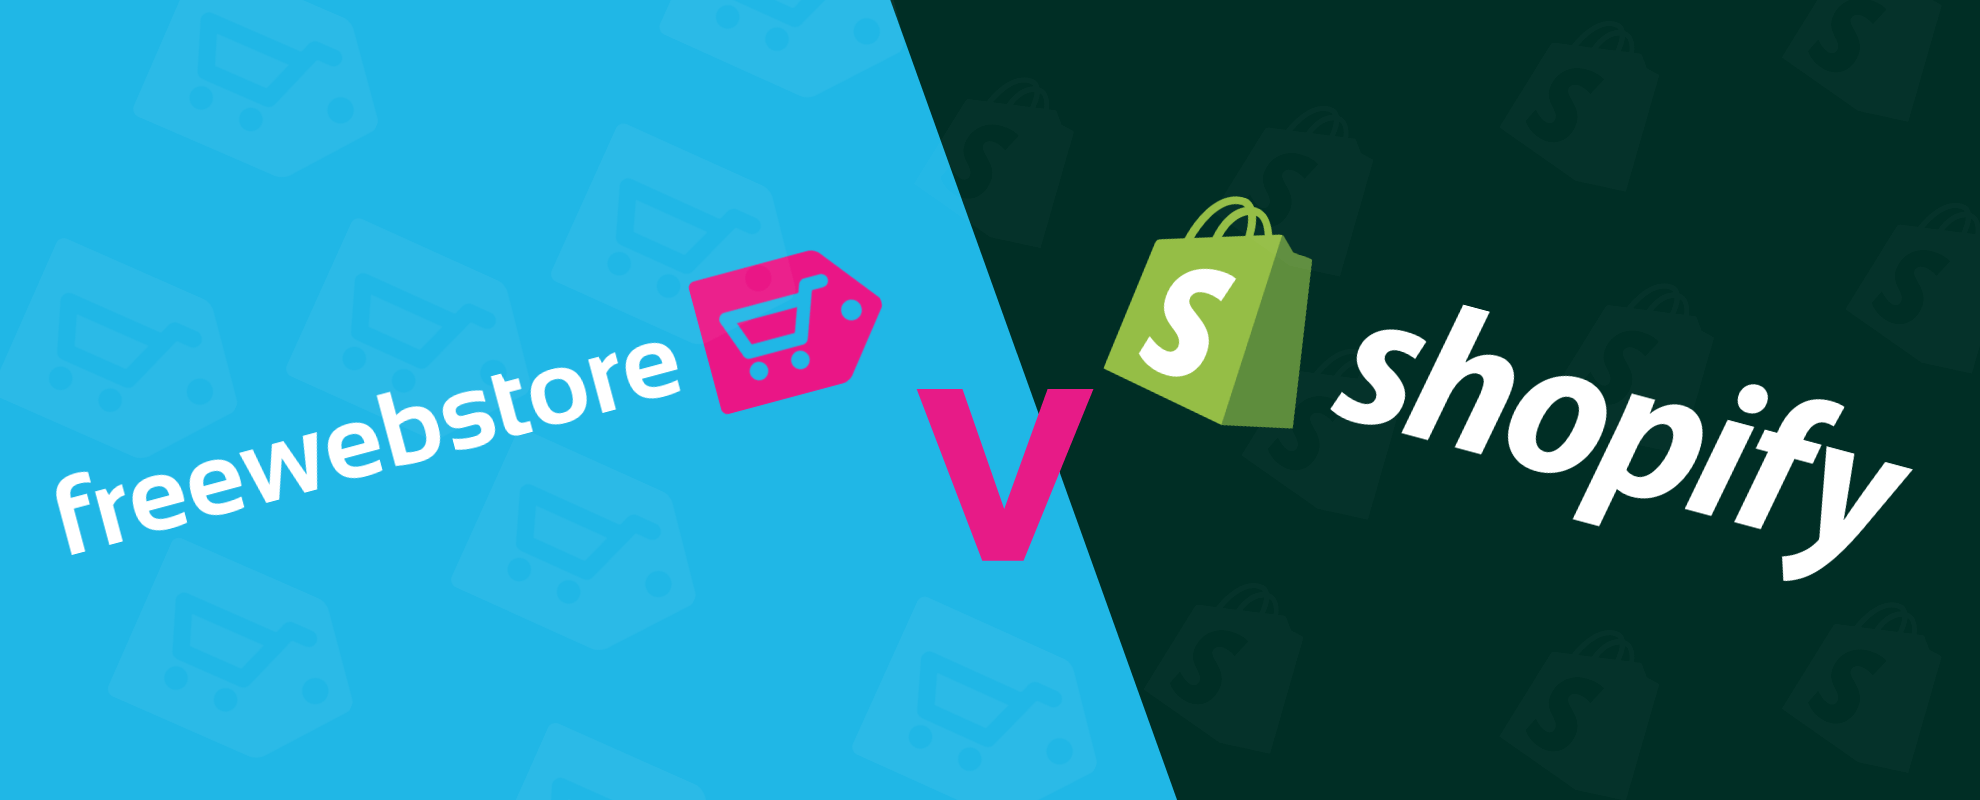 FWS vs Shopify banner